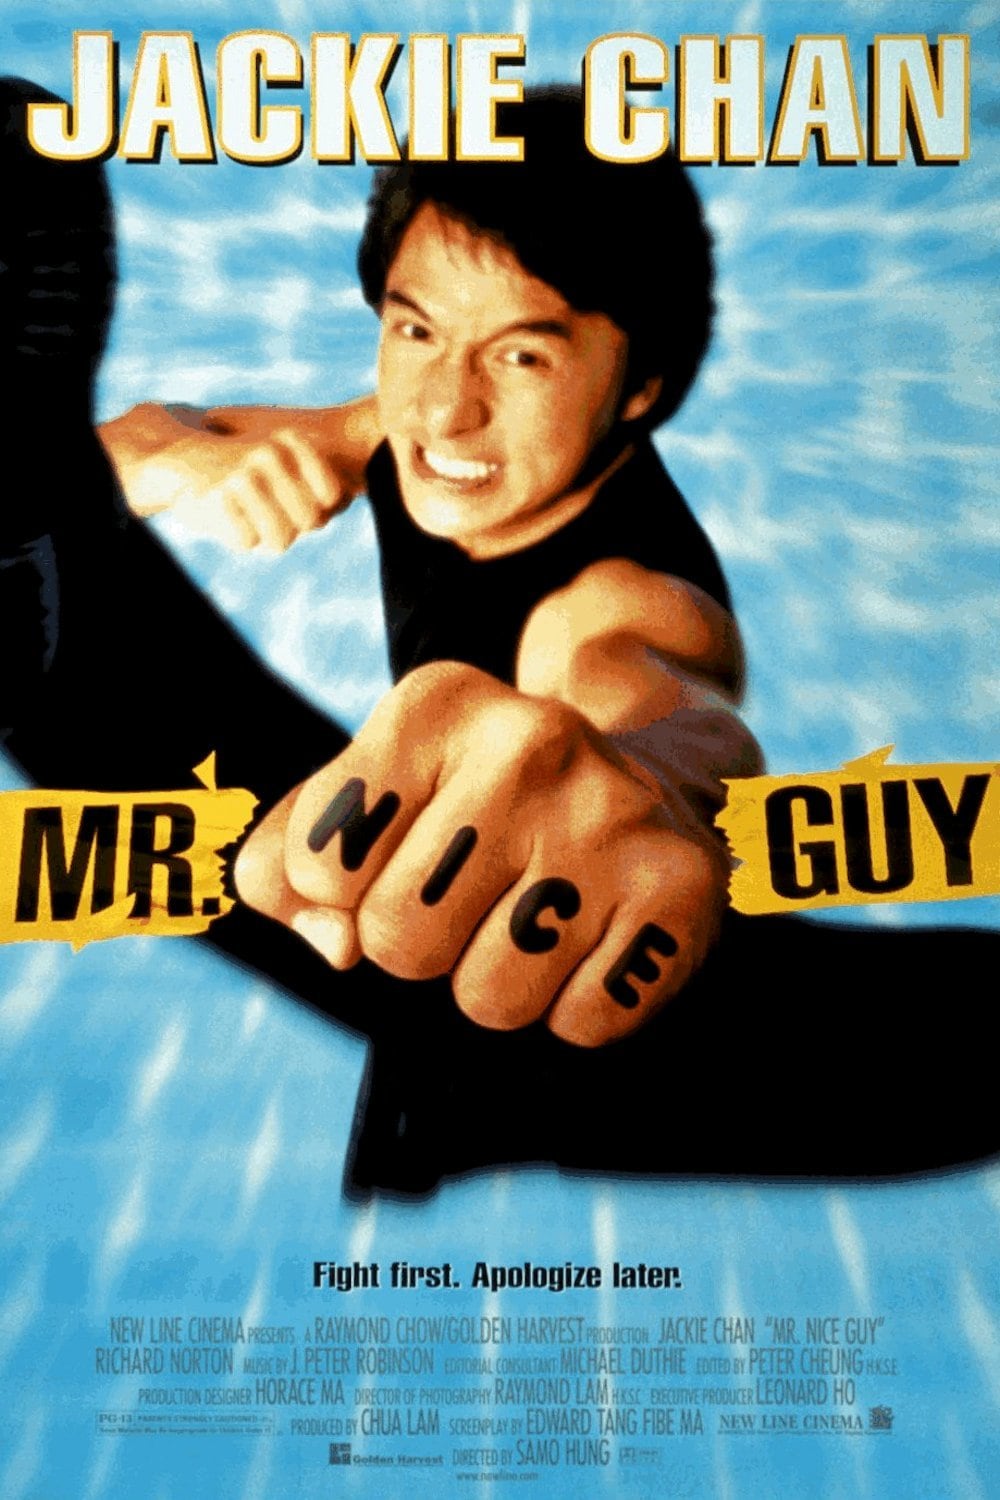 Plakat von "Mr. Nice Guy"